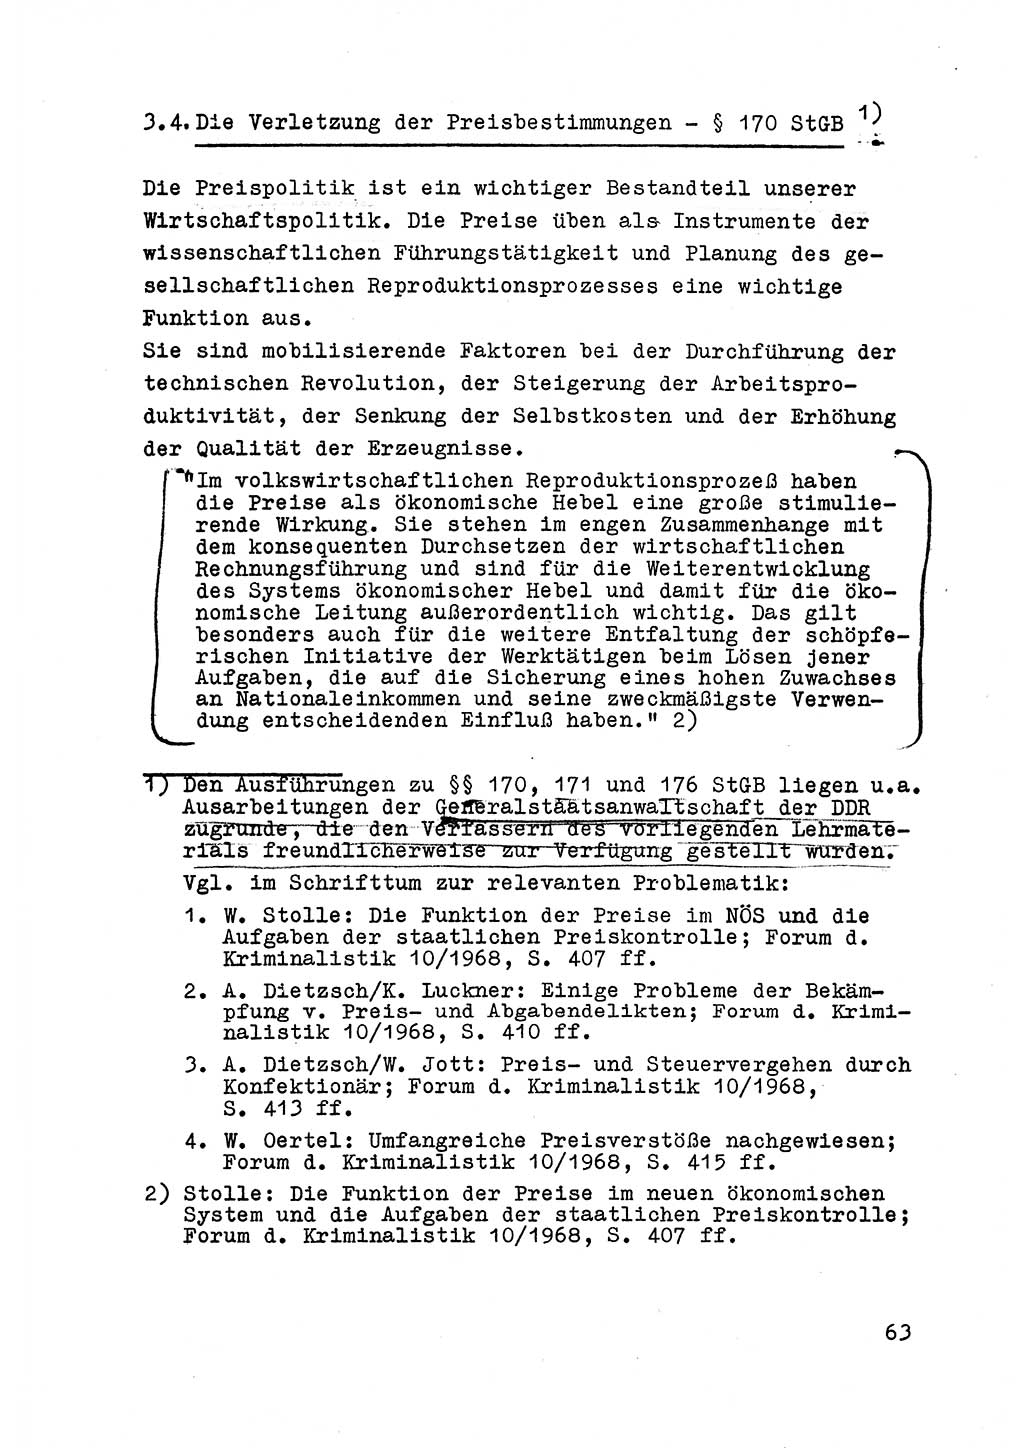 Strafrecht der DDR (Deutsche Demokratische Republik), Besonderer Teil, Lehrmaterial, Heft 6 1970, Seite 63 (Strafr. DDR BT Lehrmat. H. 6 1970, S. 63)